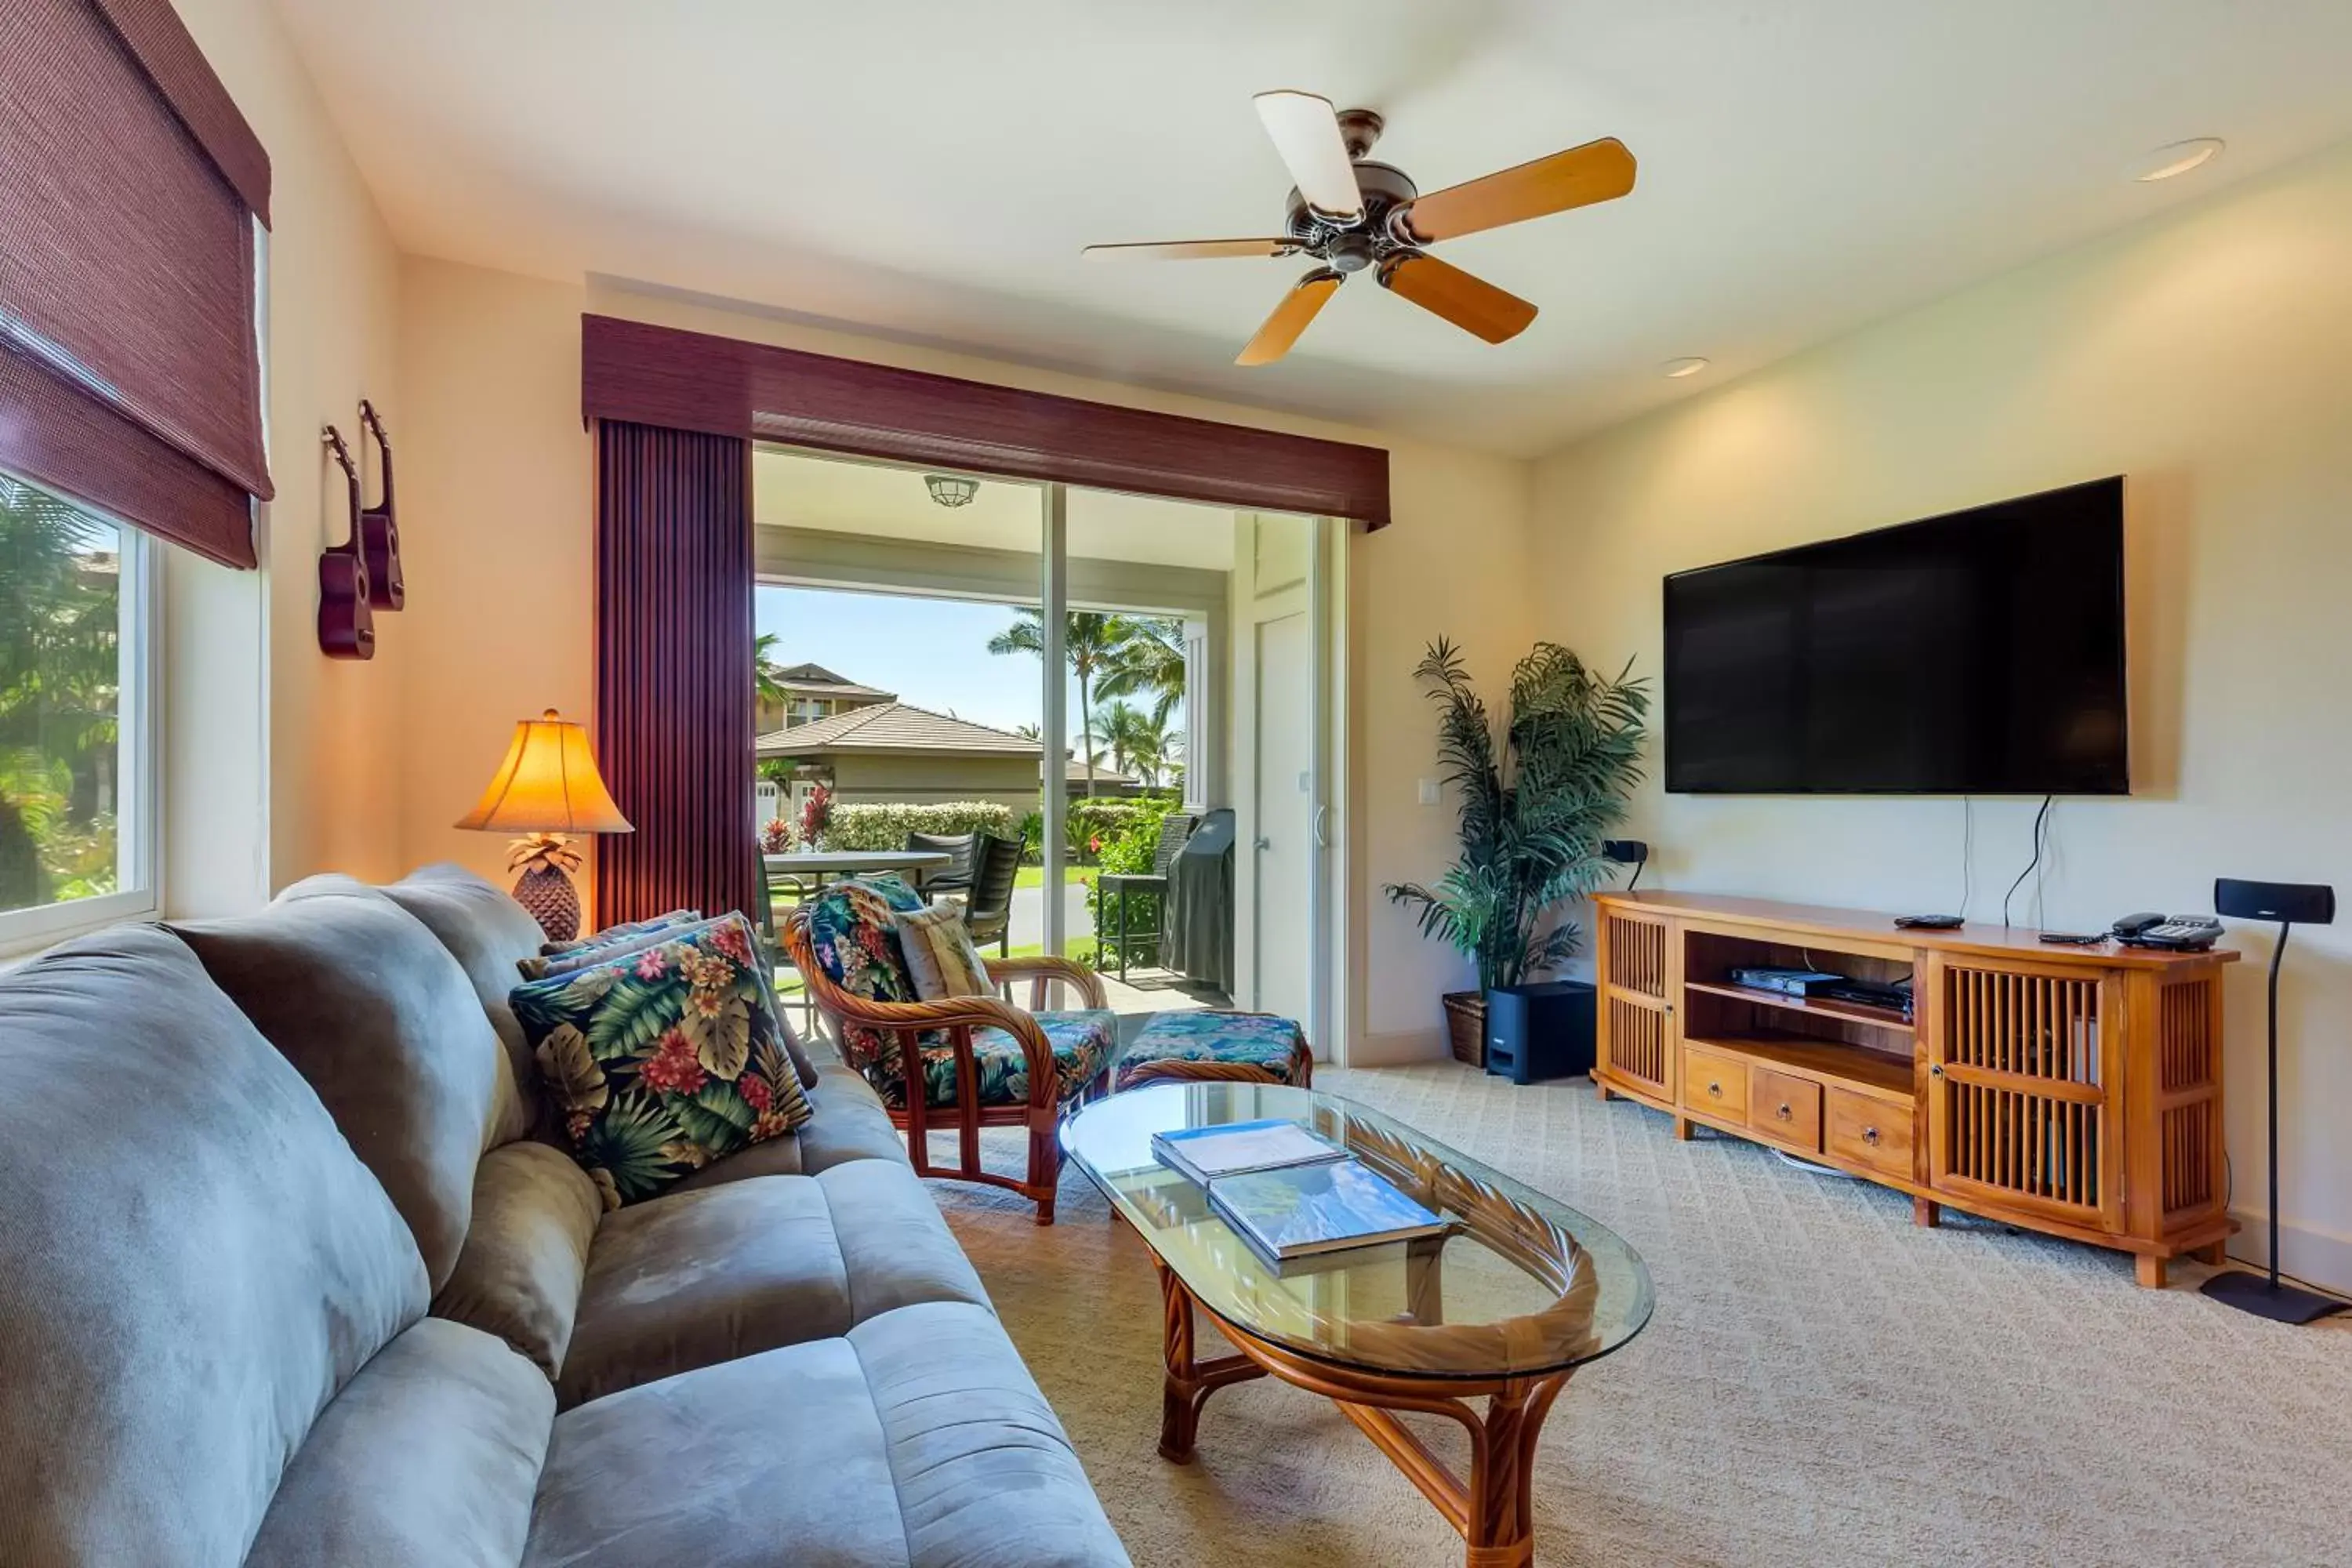 Living room, Lounge/Bar in Castle Halii Kai at Waikoloa